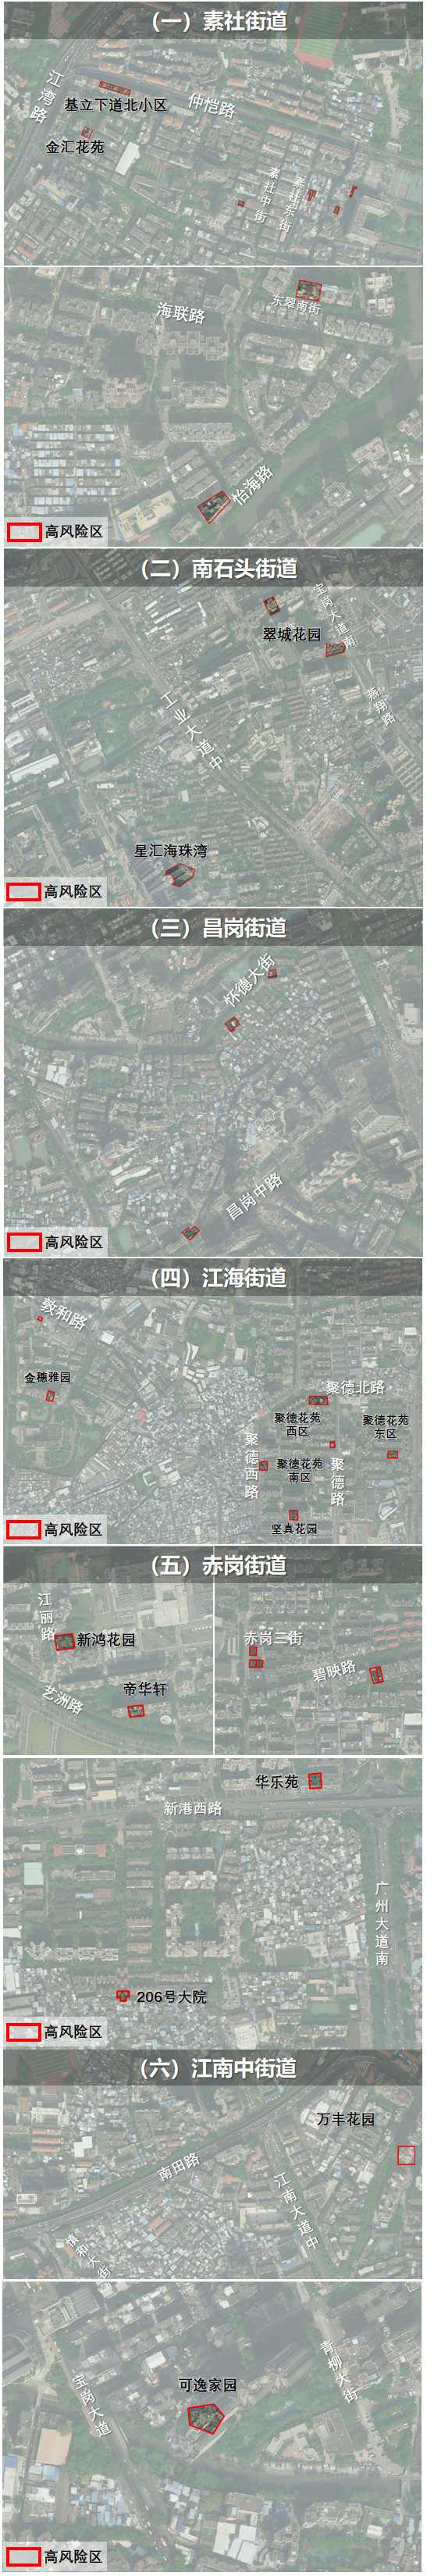 广州海珠区划定高风险区、对部分区域实行临时管控